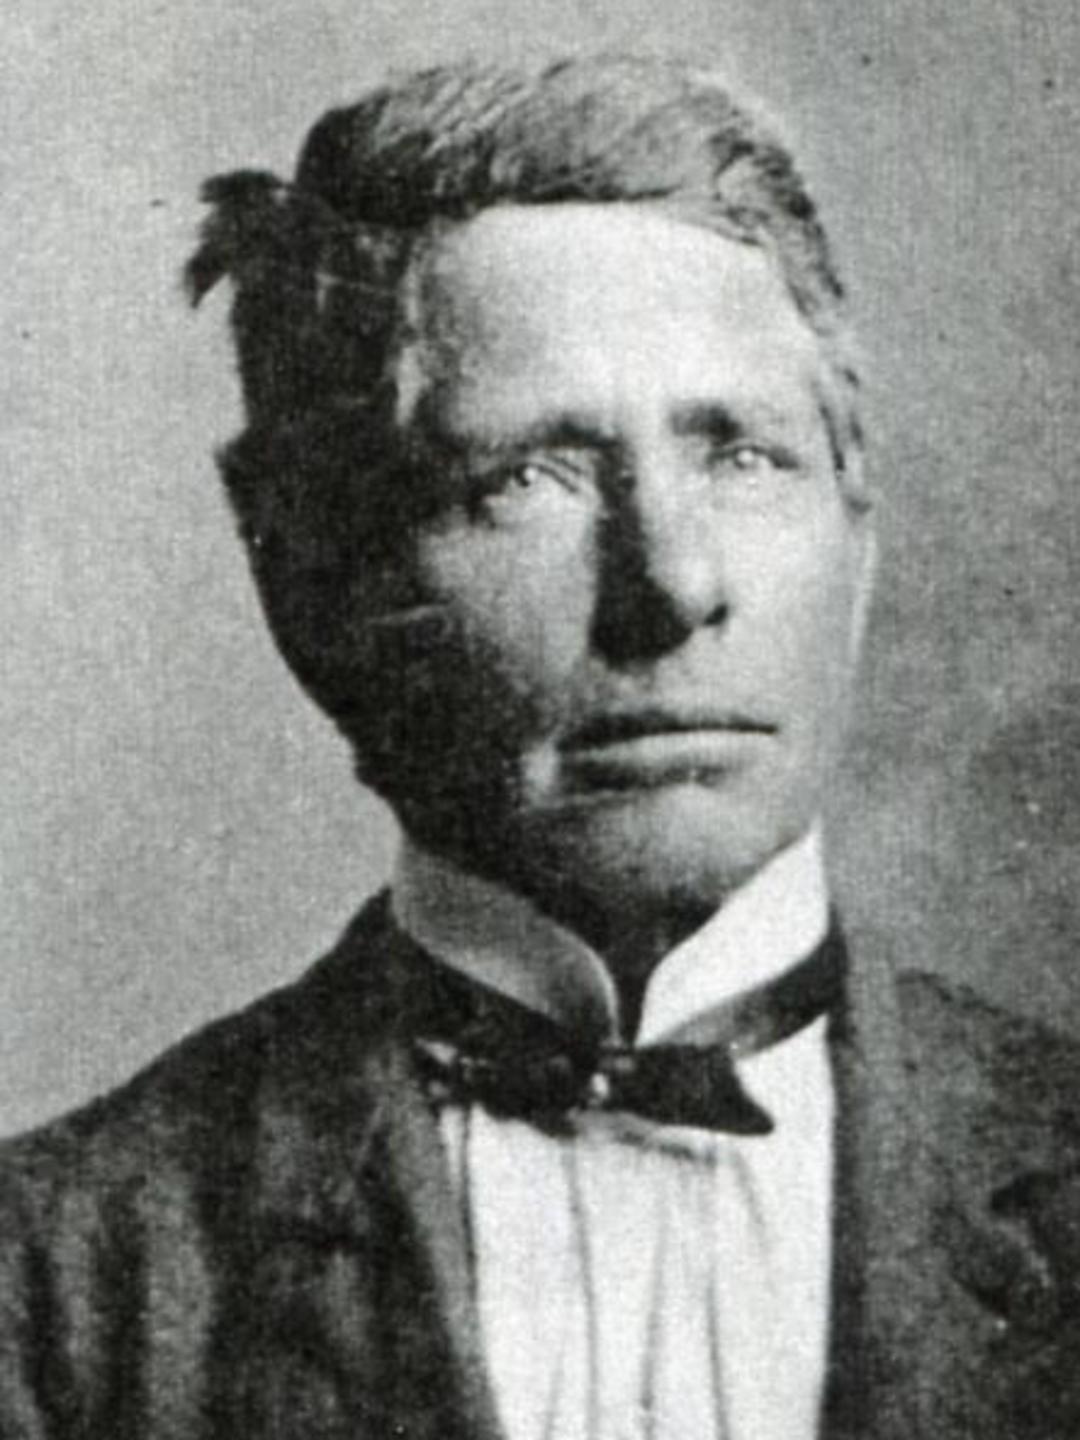 Lorenzo Snow Huish (1854 - 1937)